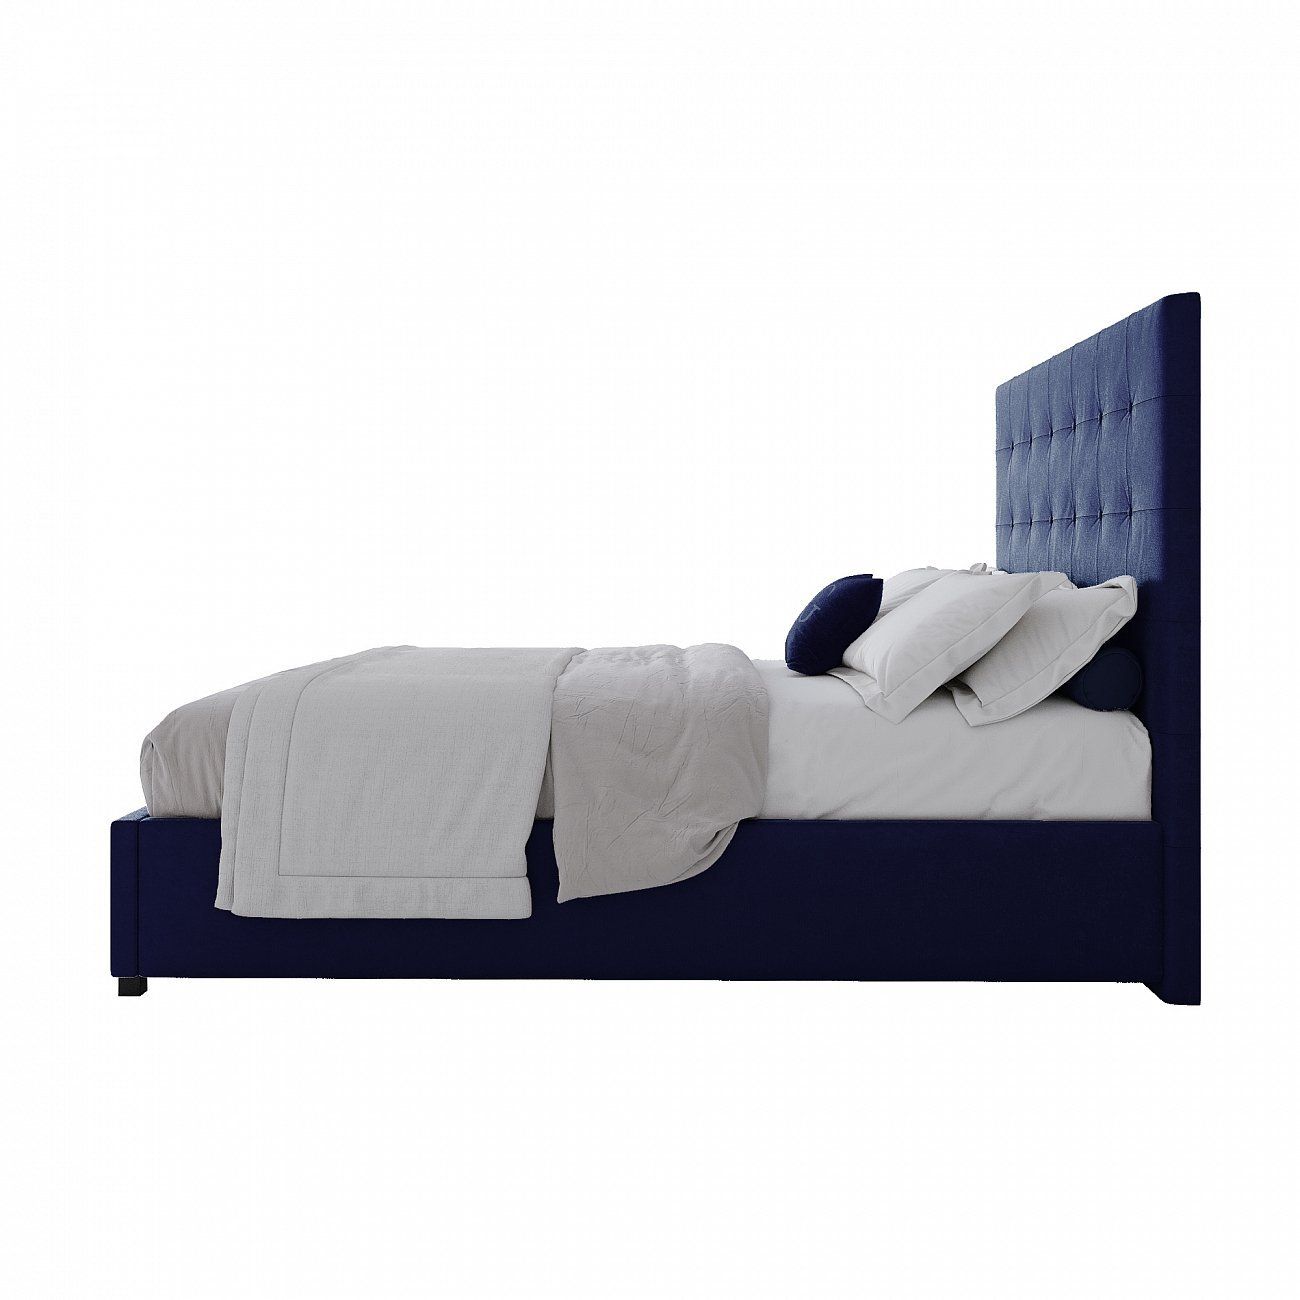 Кровать подростковая с мягким изголовьем 140х200 см синяя Royal Black